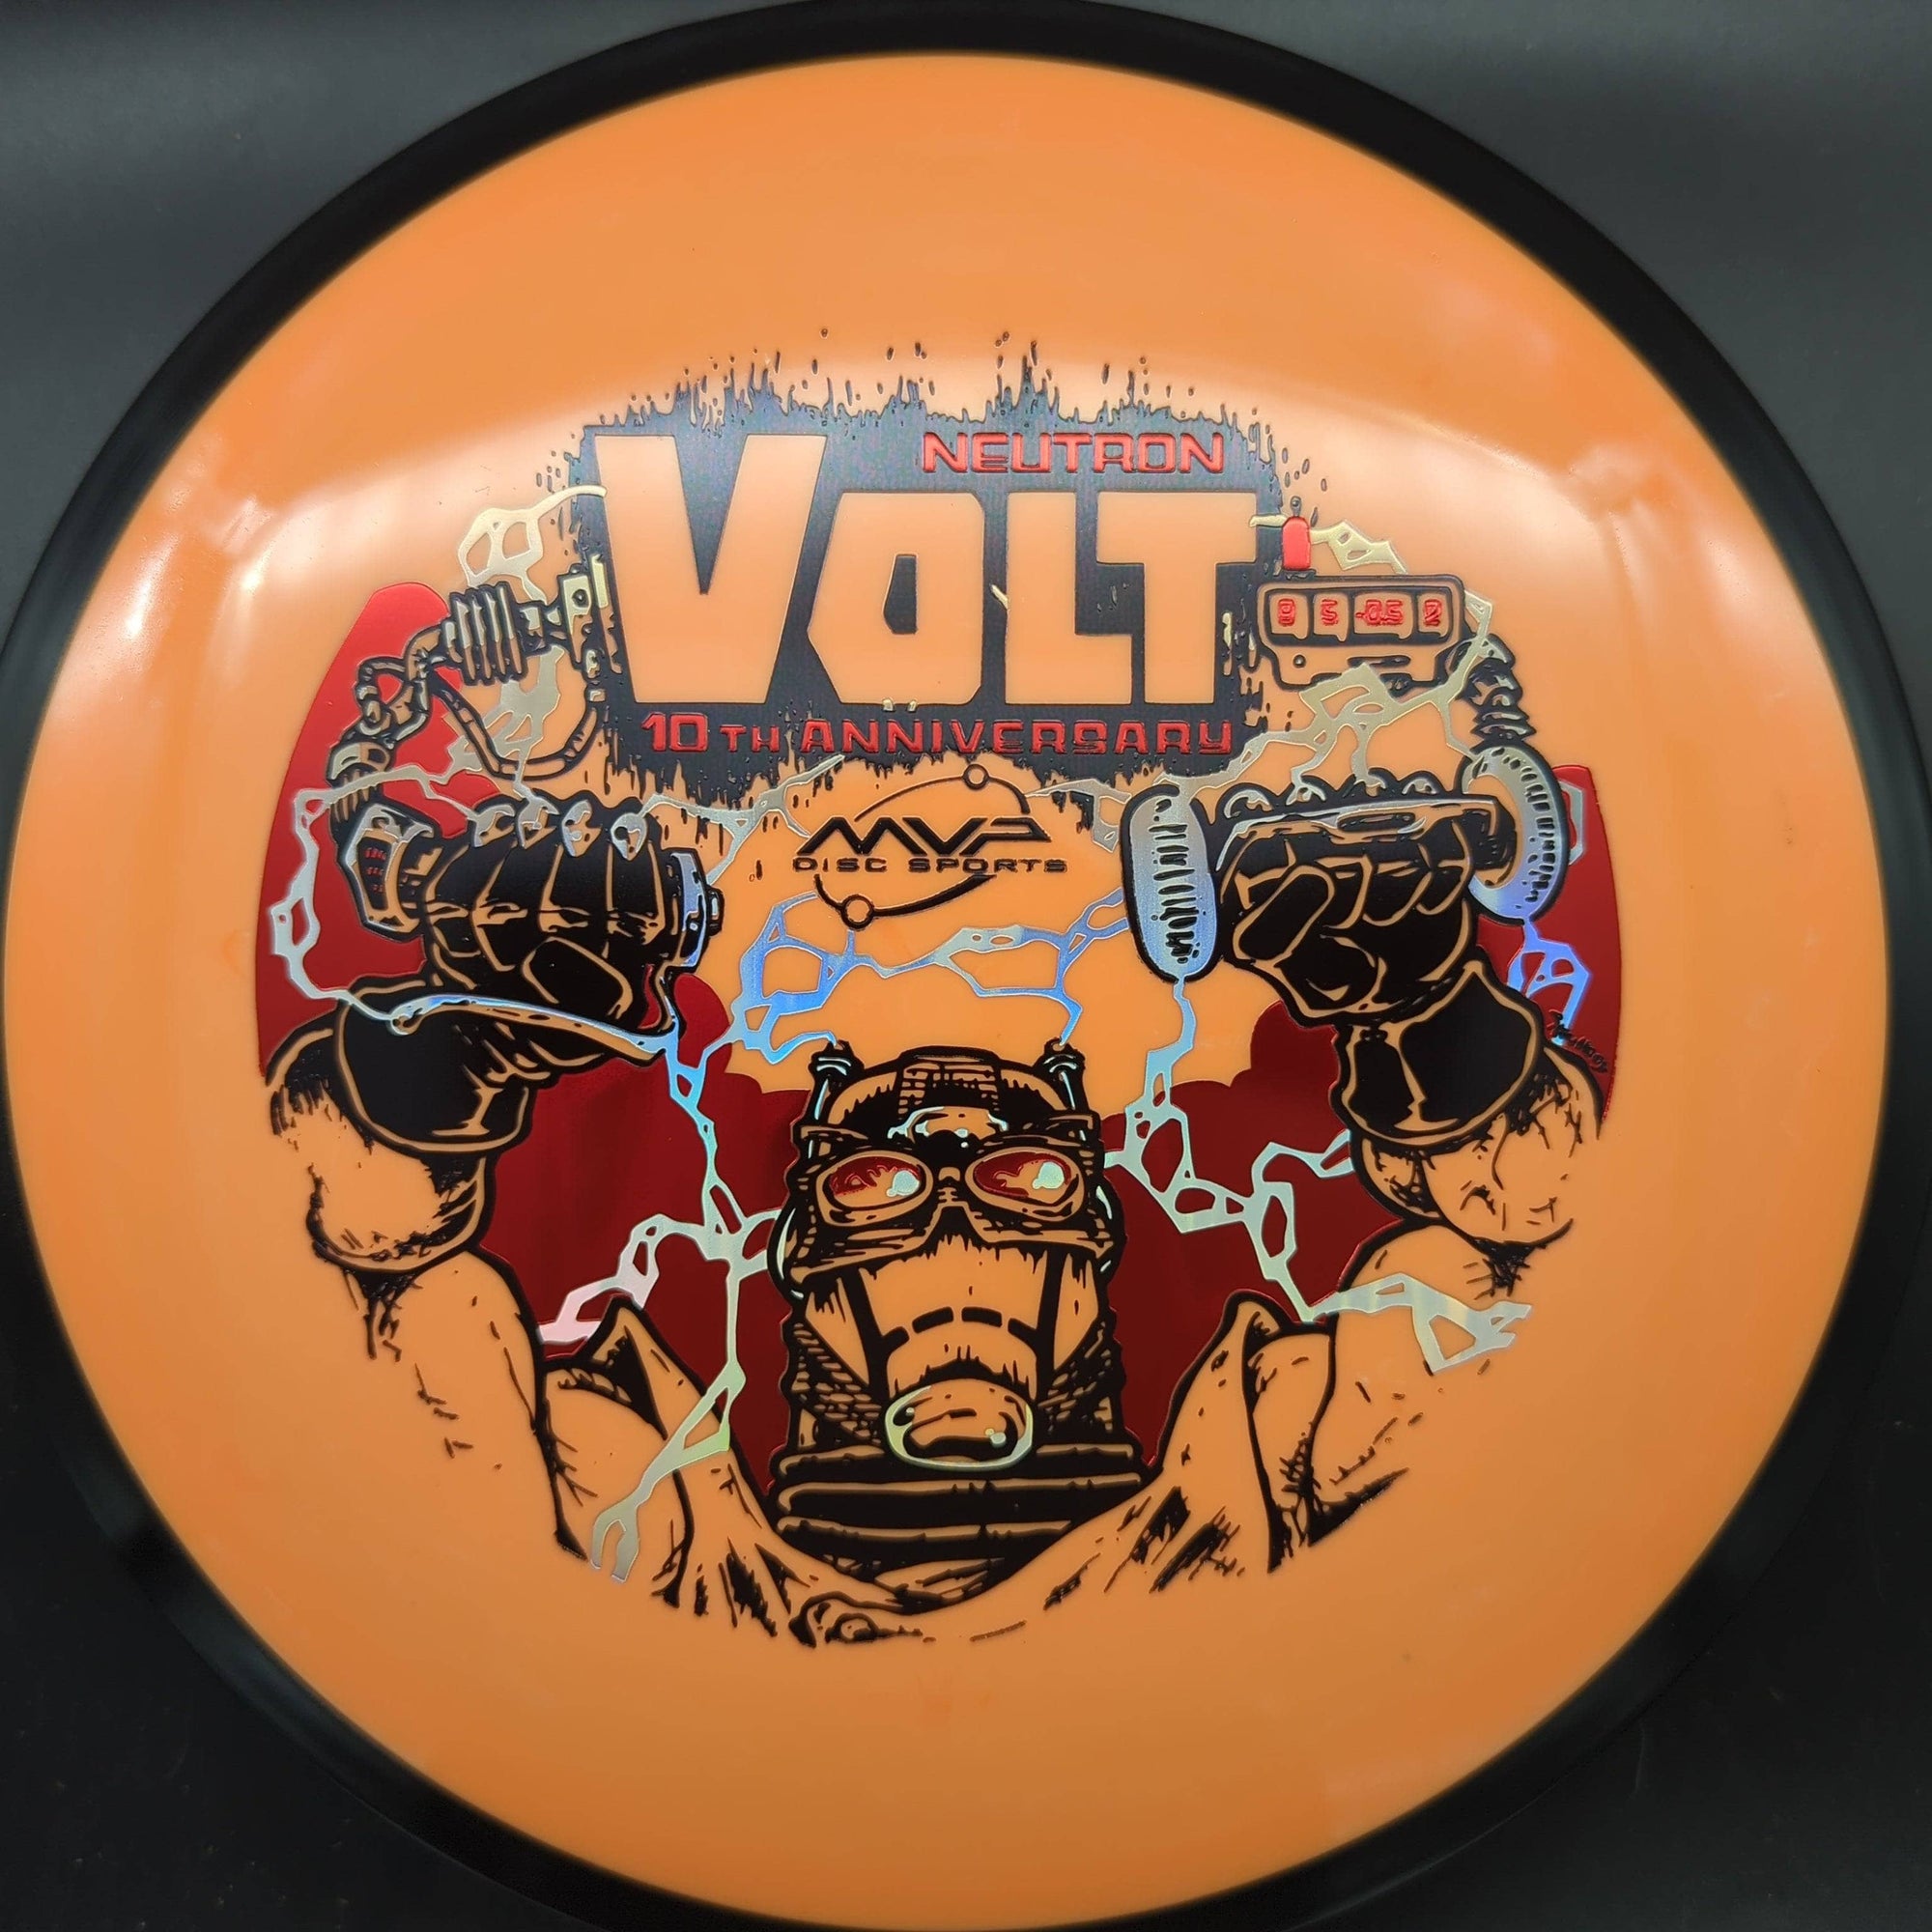 MVP Fairway Driver Orange 172g Volt, Neutron, 10th Anniversary, Skullboy Artwork